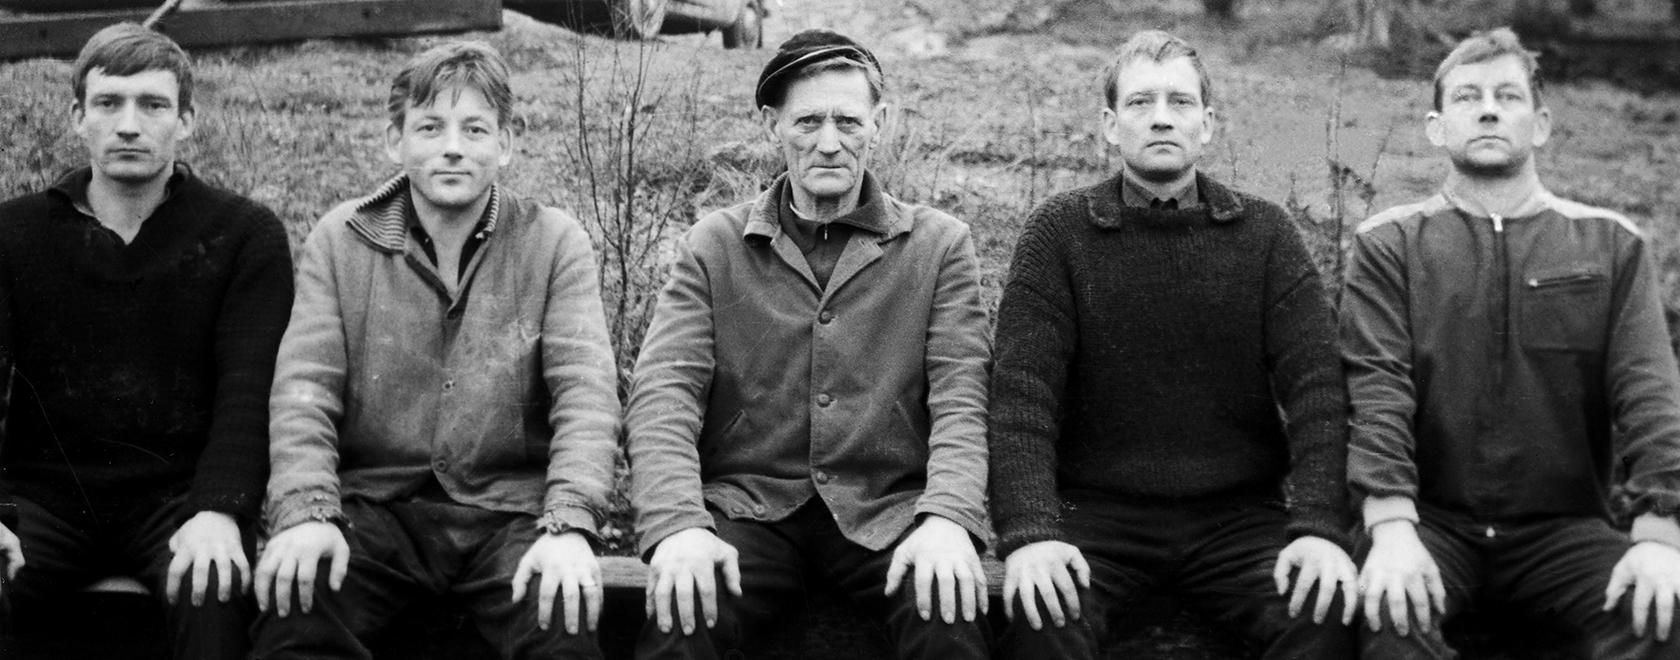 Yrjö, Kain, Vihtori, Harri ja Marko Tapper Juholan pihamaalla 1960-luvulla. Kuva: Saarijärven museo